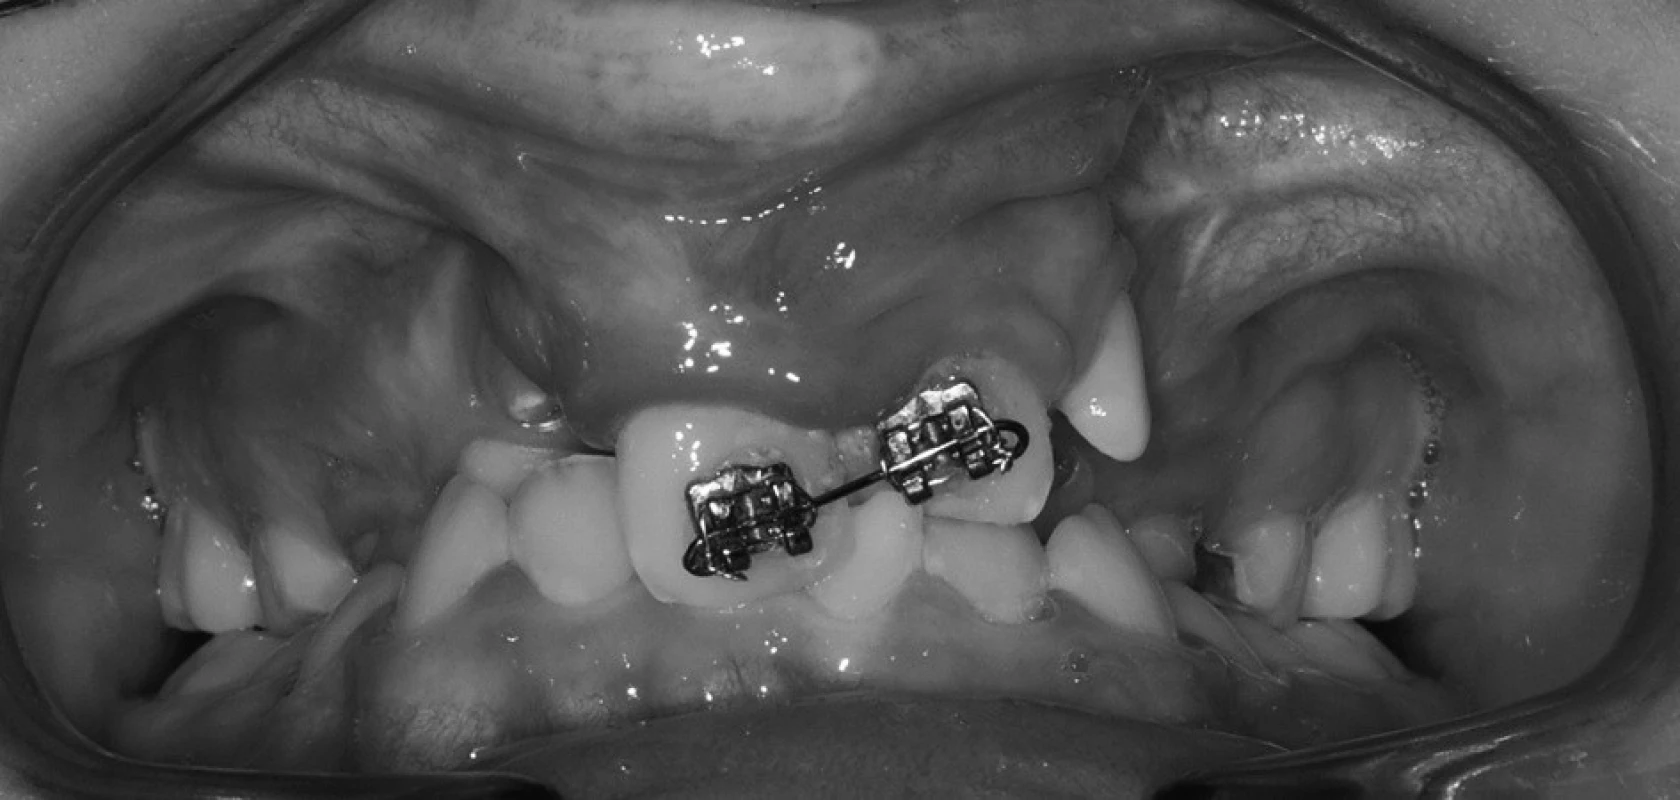 Smíšený chrup pacienta s oboustranným celkovým rozštěpem, zub 21 prořezal do zákusu, na zubech 11 a 21 je nasazen parciální fixní aparát.